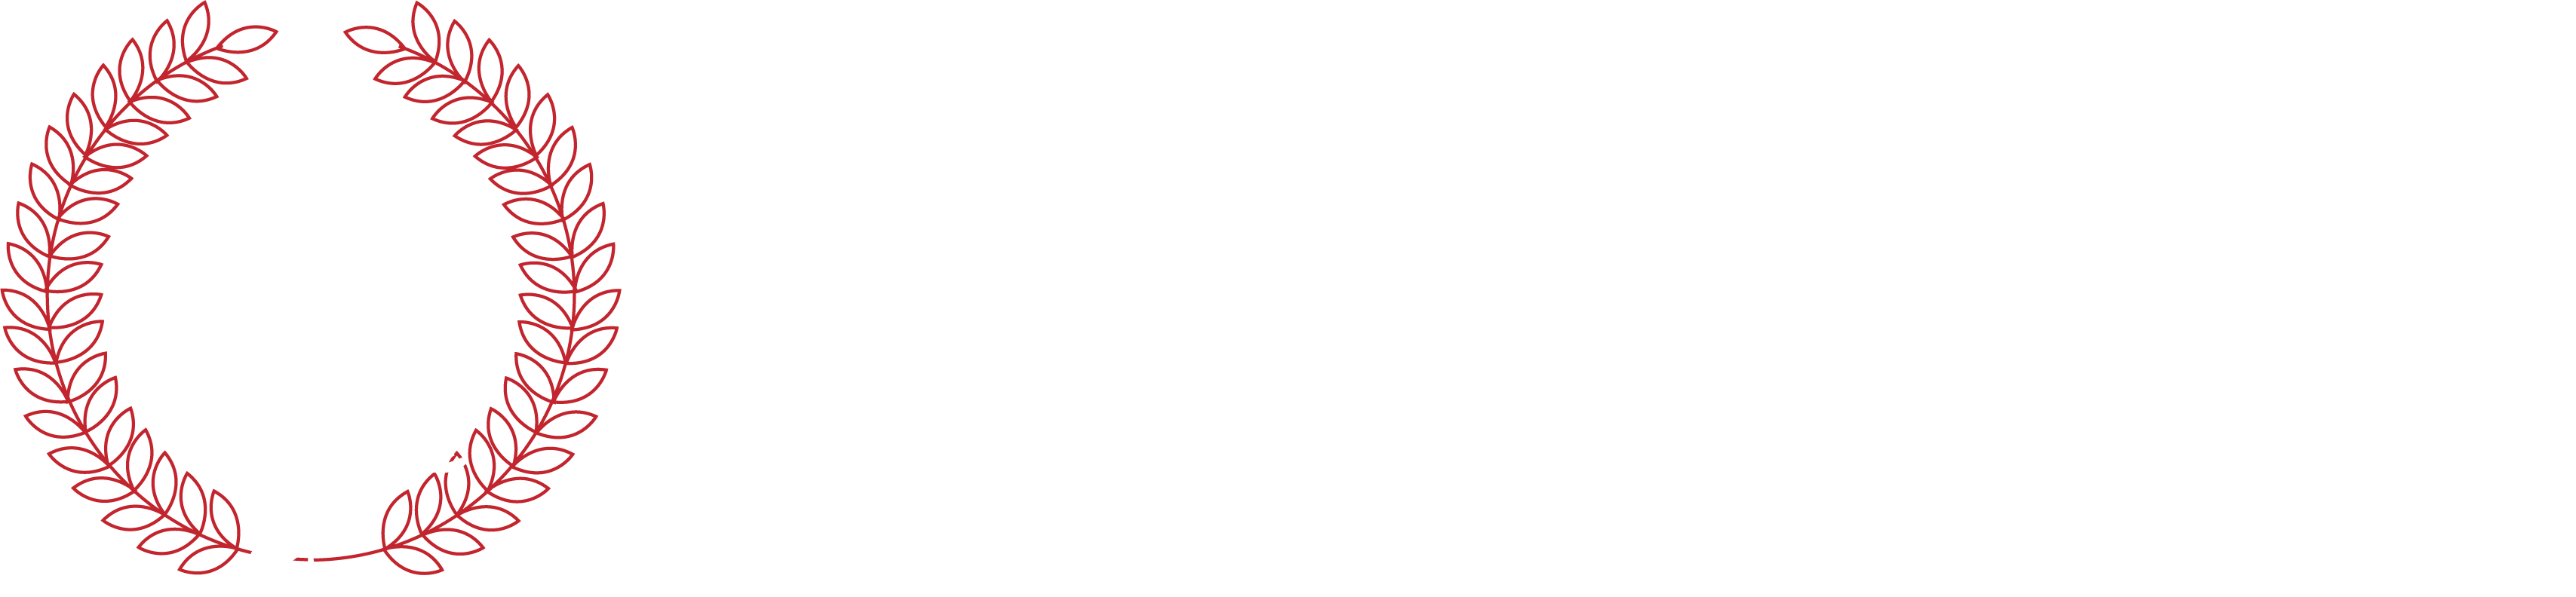 Restaurant Achilles GmbH